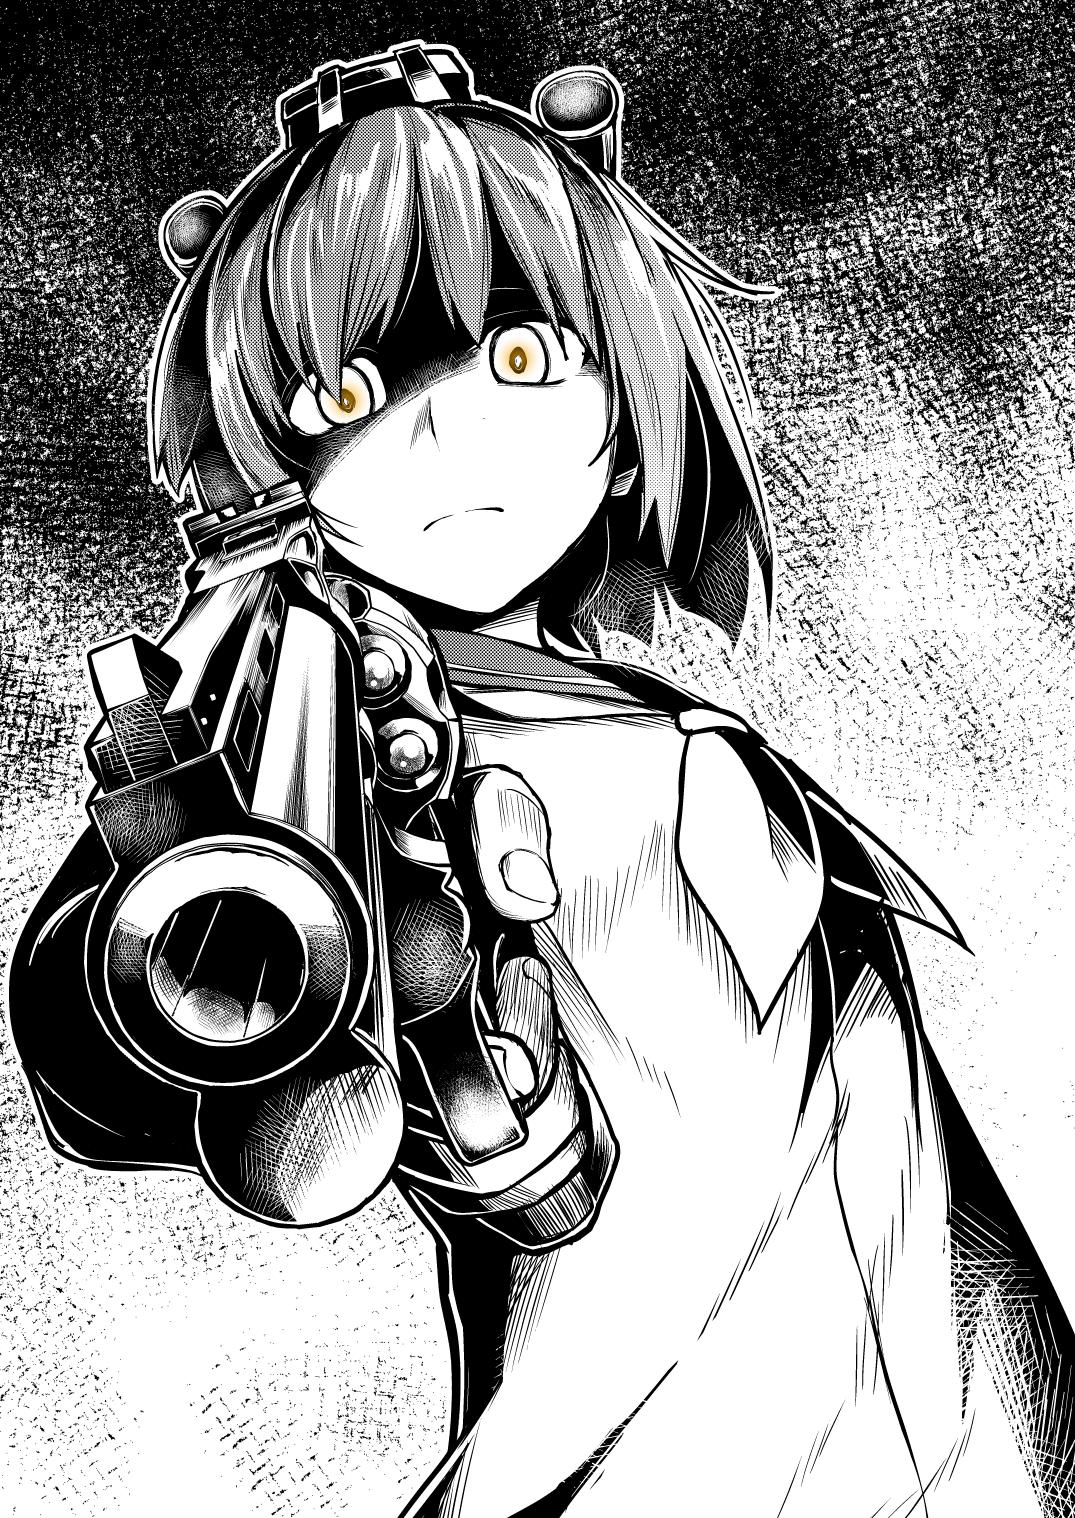 Yukikaze with pistol: Kantai Collection monochrome manga art: Other anime (Artist: Chaigidhiell)